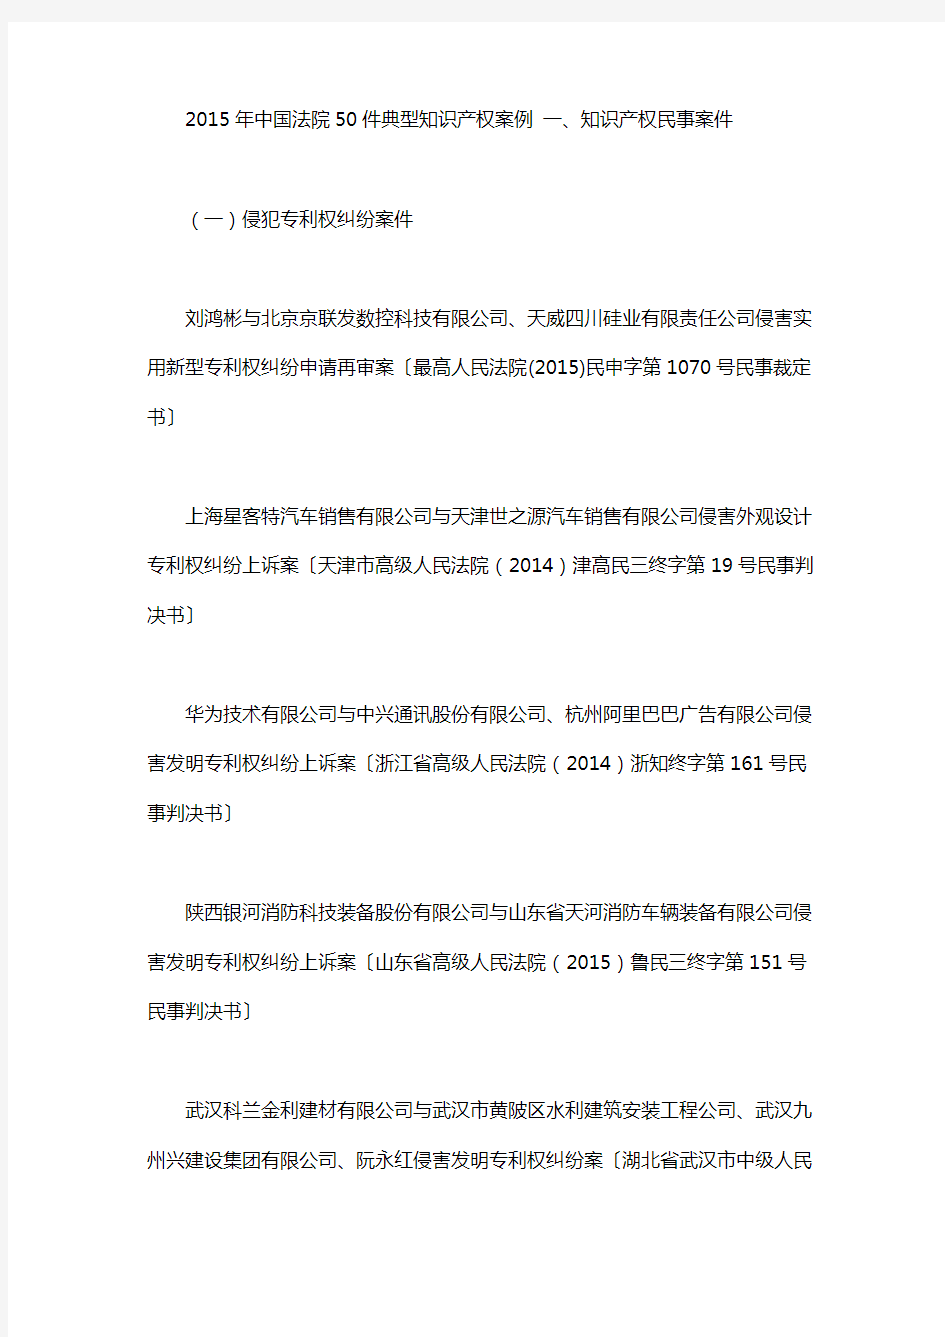 知识产权典型案例_2015年中国法院50件典型知识产权案例